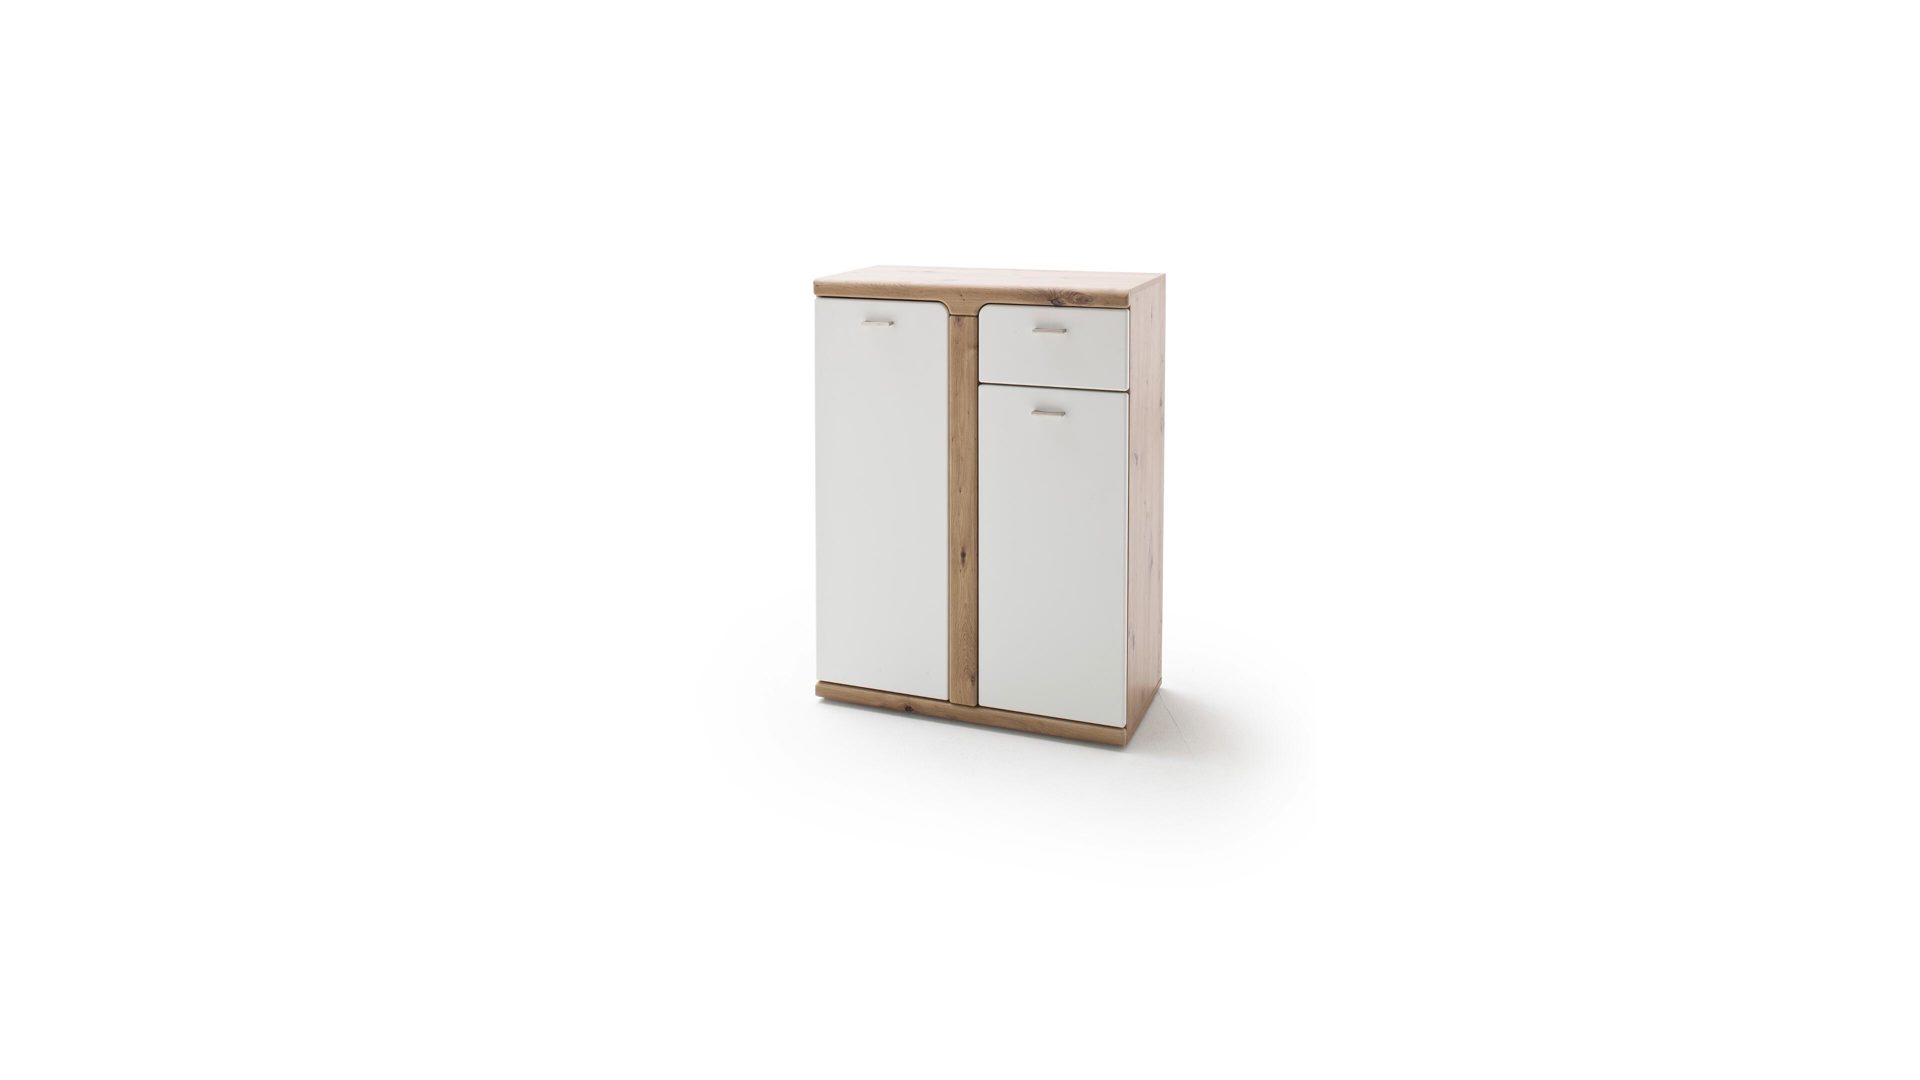 Kombikommode Mca furniture aus Holz in Weiß Garderoben-Kombikommode weiße & balkeneichefarbene Kunststoffoberflächen – zwei Türen, eine Schublade